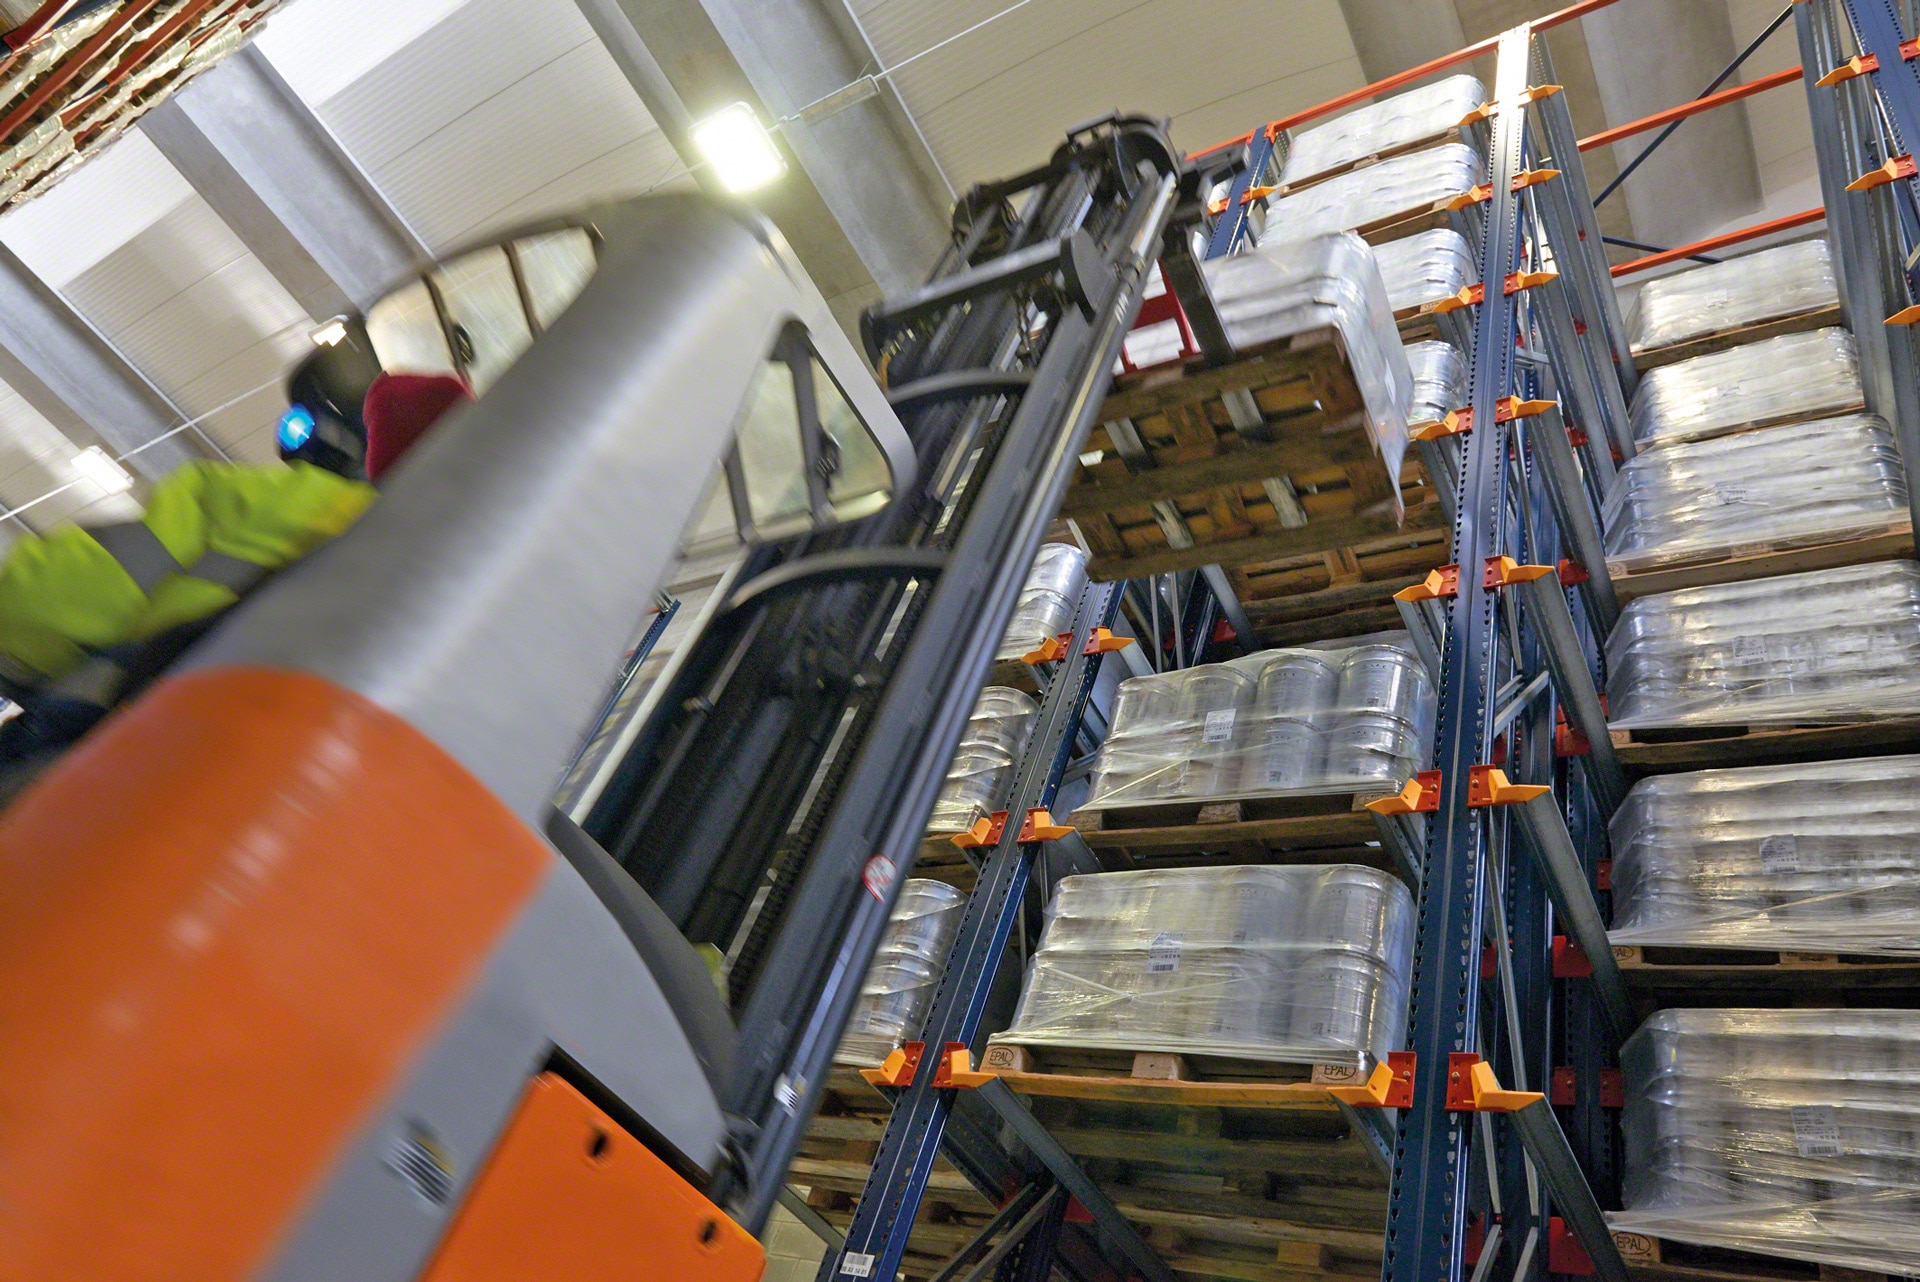 Los racks drive-in facilitan a los equipos de manutención la carga y descarga de mercancía